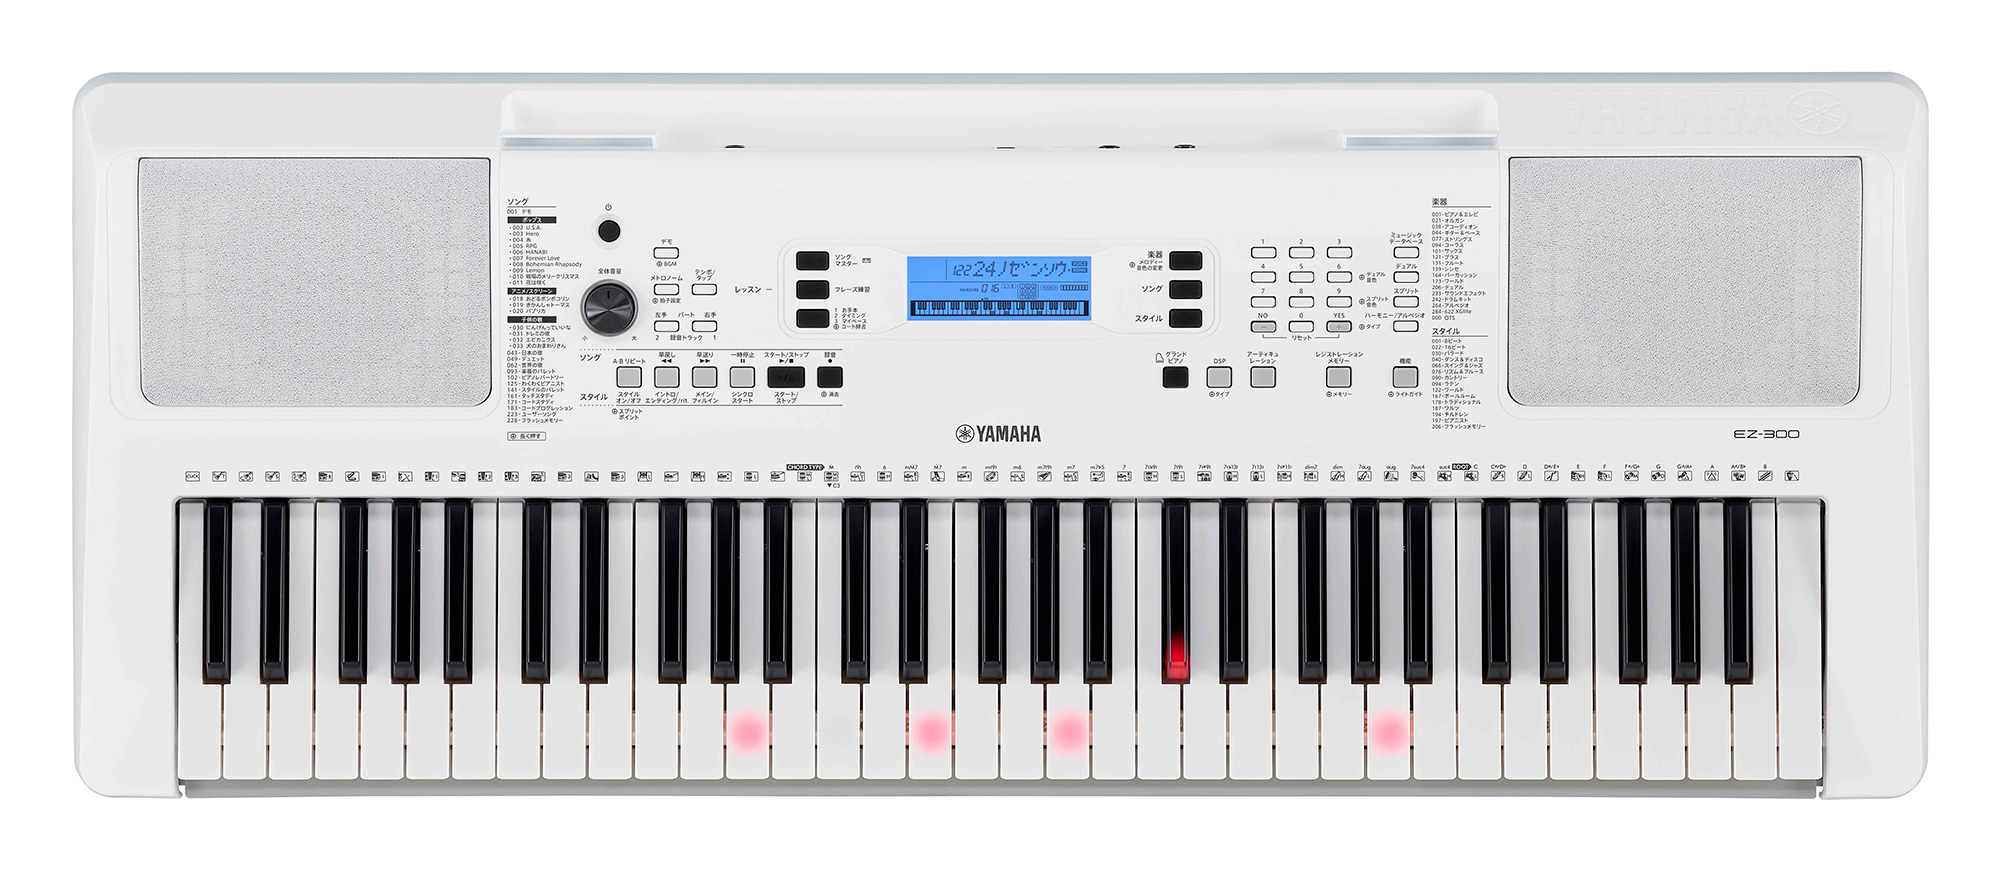 初めてでも楽譜なしで楽しく弾ける、光る鍵盤搭載モデル。新音源LSIによる音質の向上と人気の内蔵曲の拡充で、より幅広い年代が楽しめるモデルとして進化。 ヤマハ 電子キーボード『EZ-300』｜ヤマハ株式会社のプレスリリース